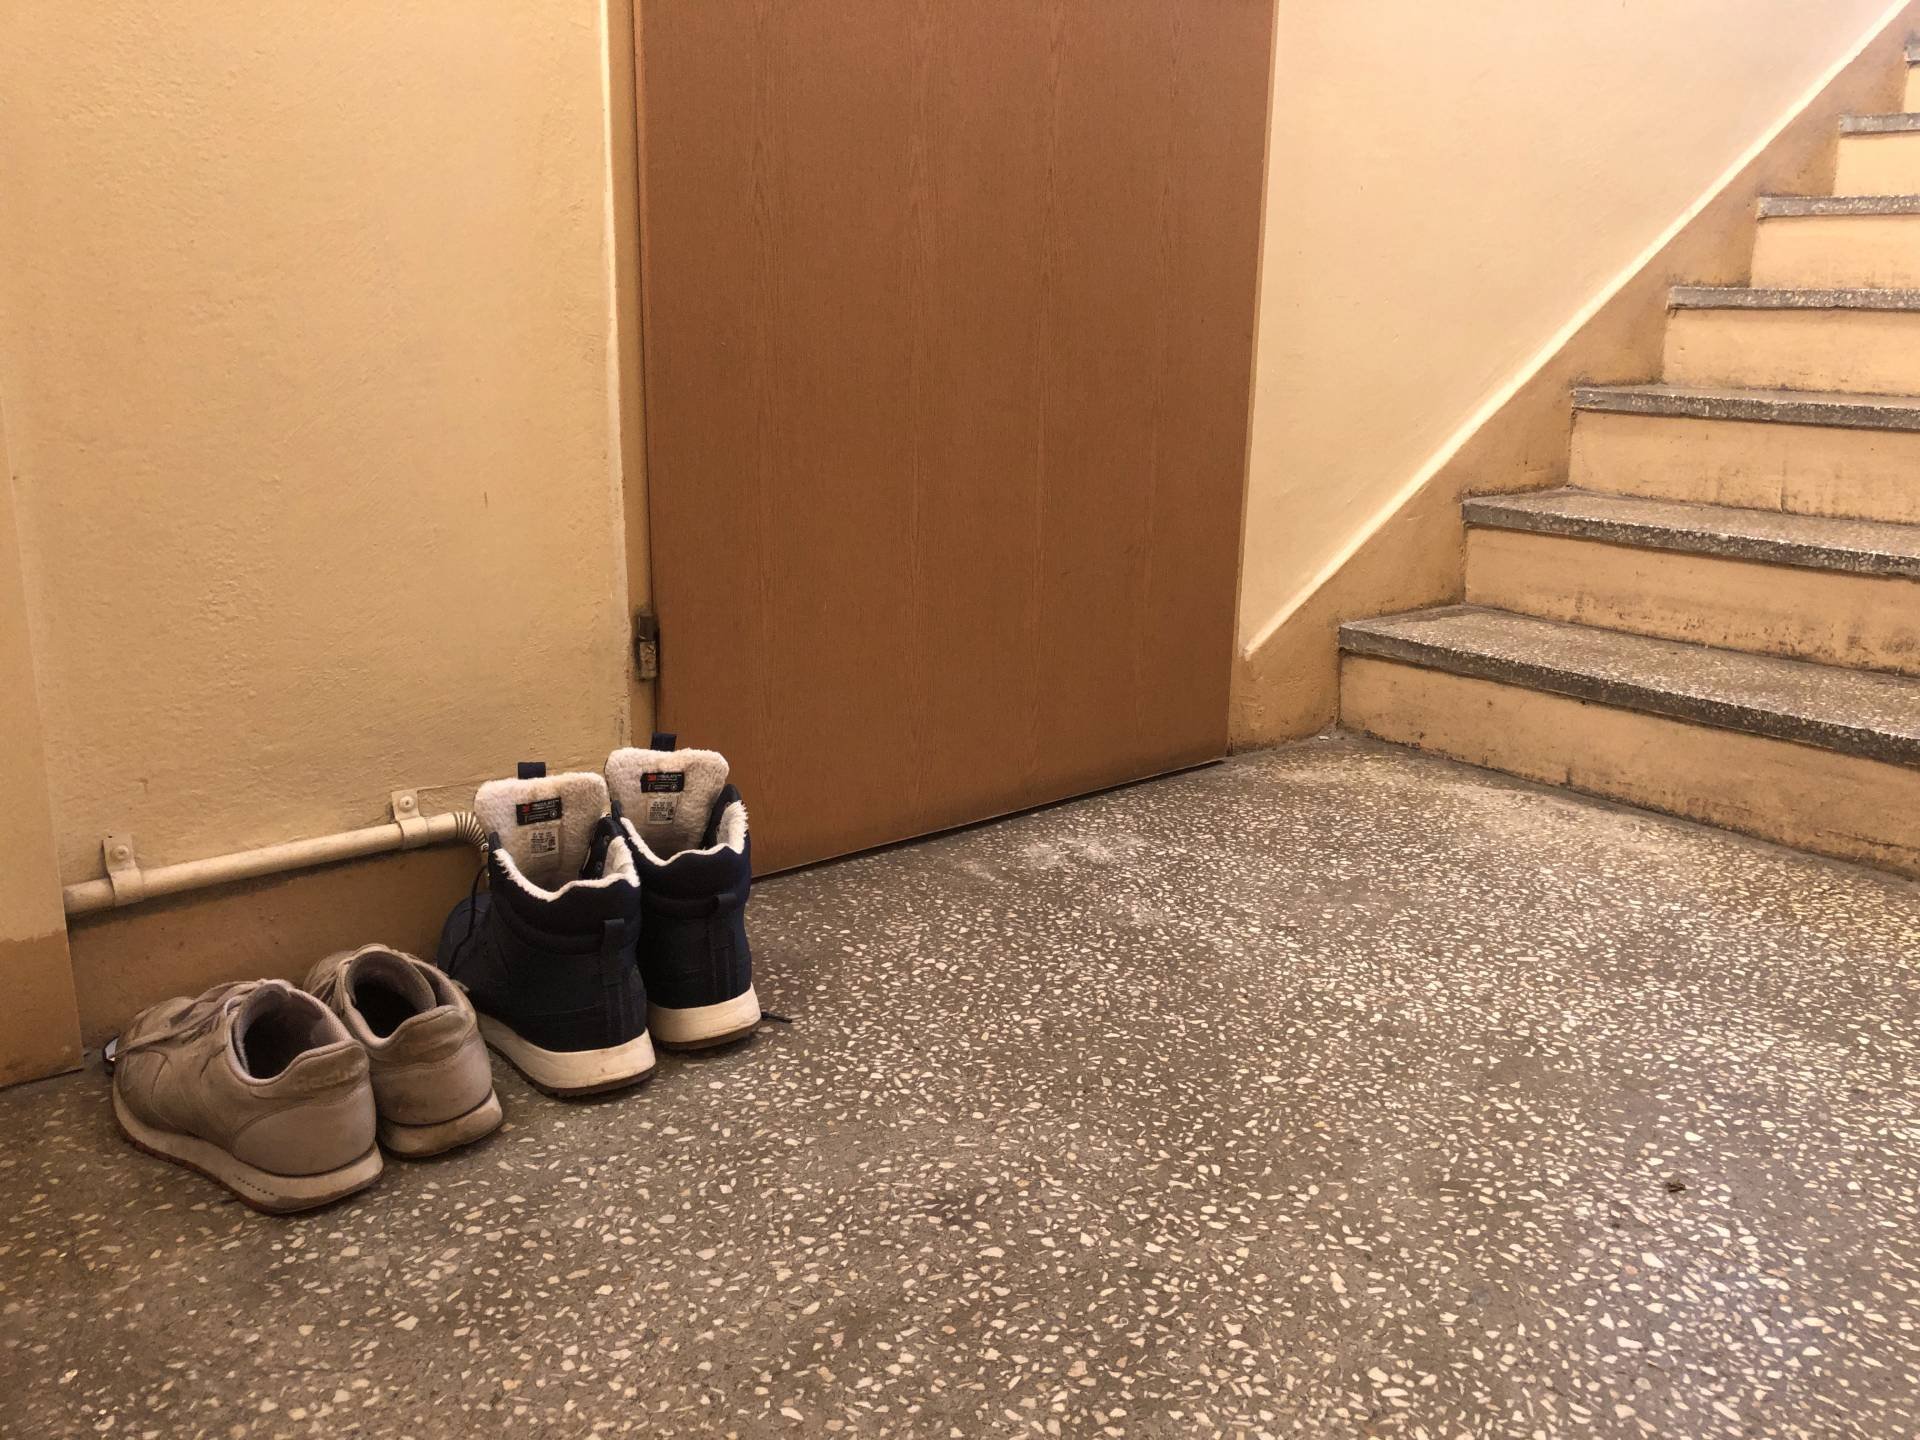 Buty zostawione przed wejściem do mieszkania